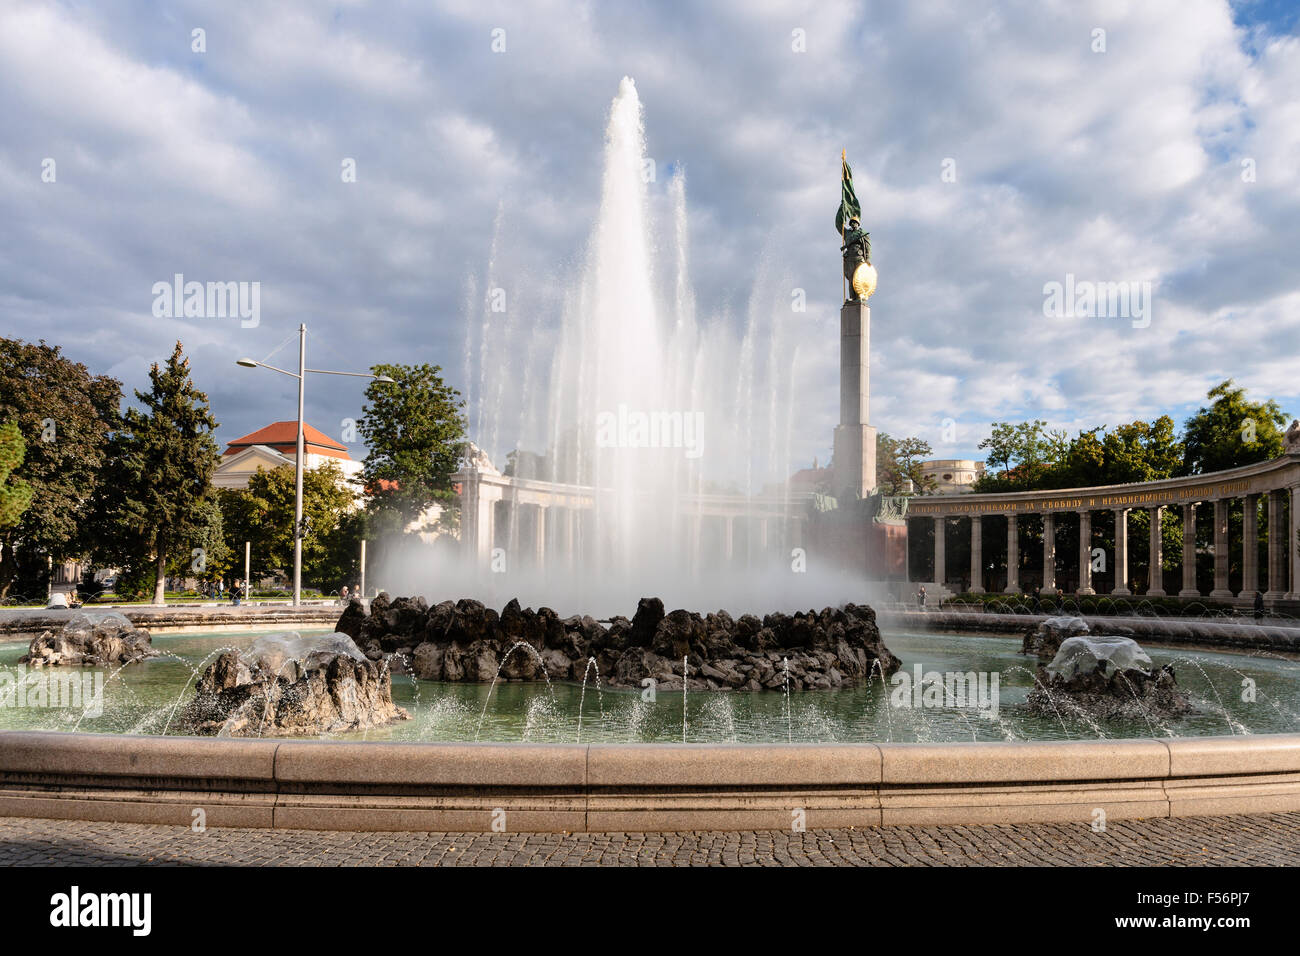 Vienne, Autriche - 27 septembre 2015 : Hochstrahlbrunnen fontaine, Monument commémoratif de guerre soviétique (Heldendenkmal der Roten Armee, Mon héros Banque D'Images